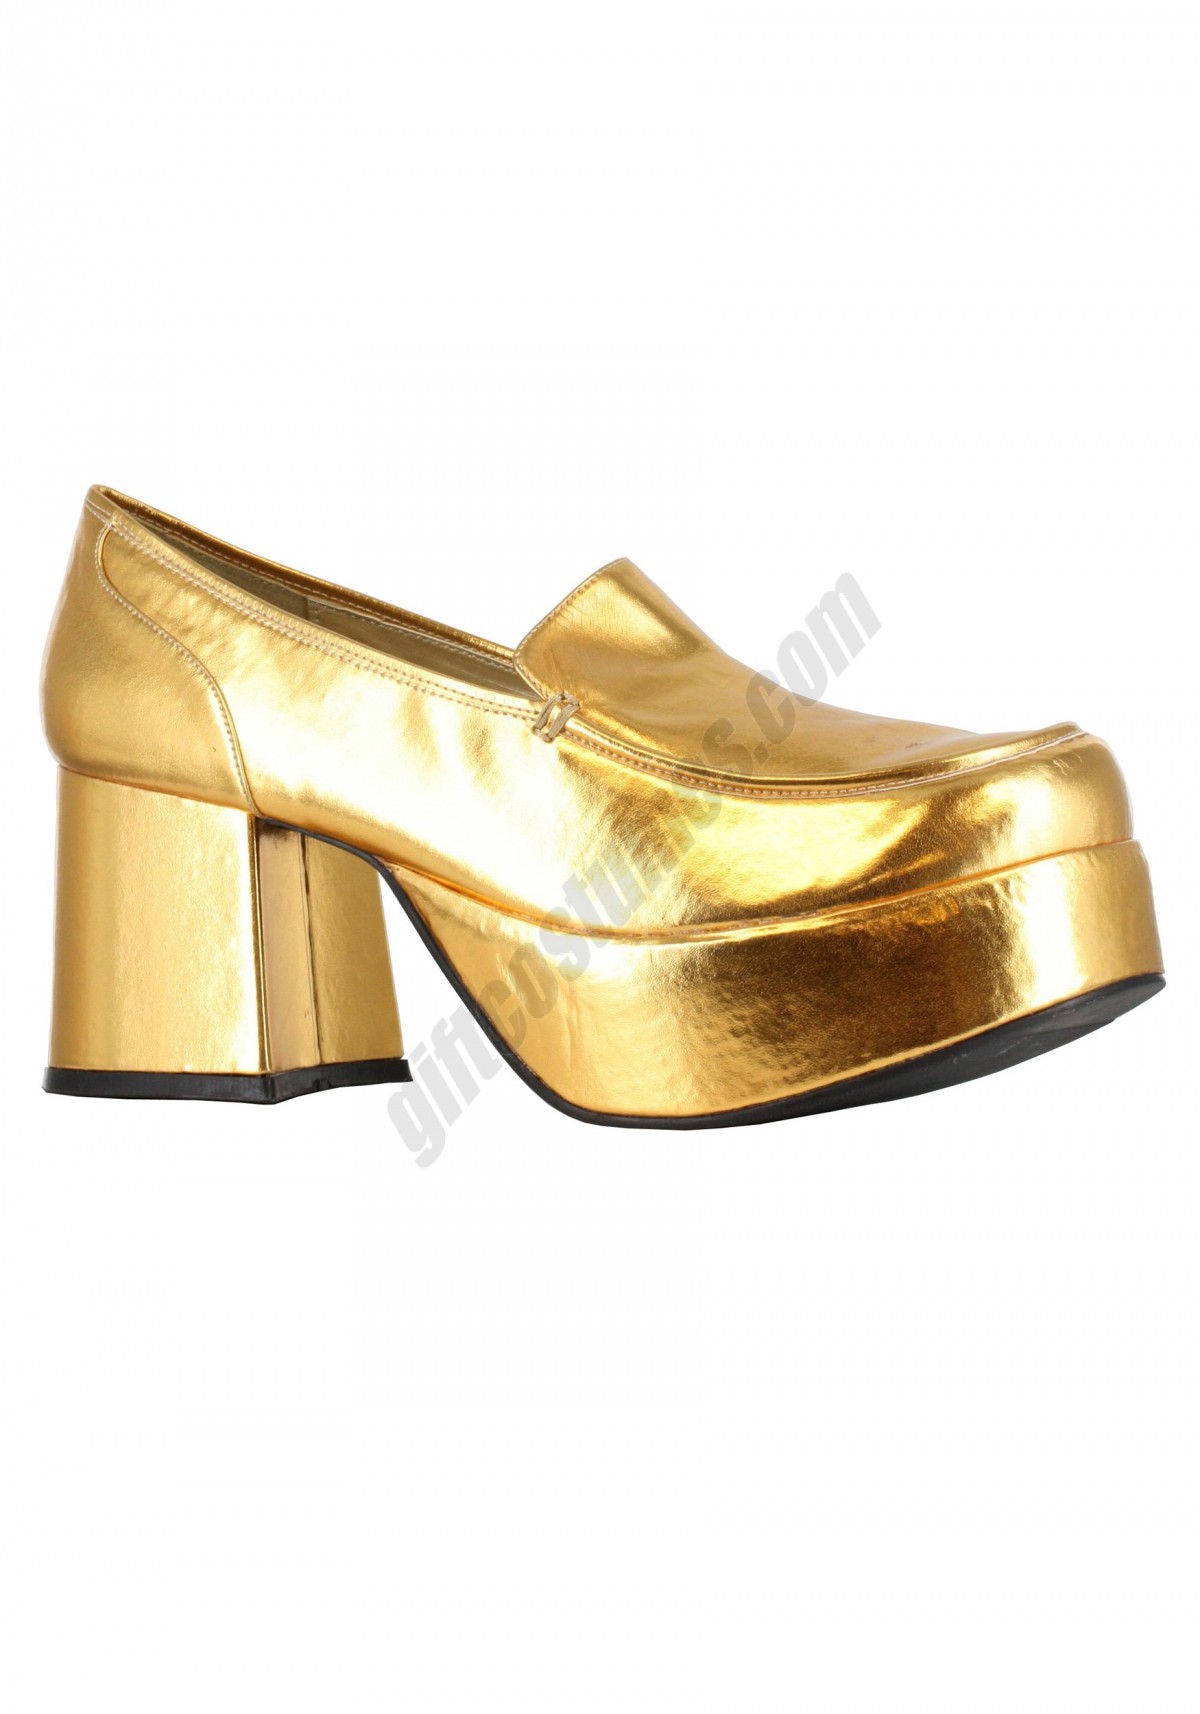 Gold Daddio Pimp Shoes Promotions - -0